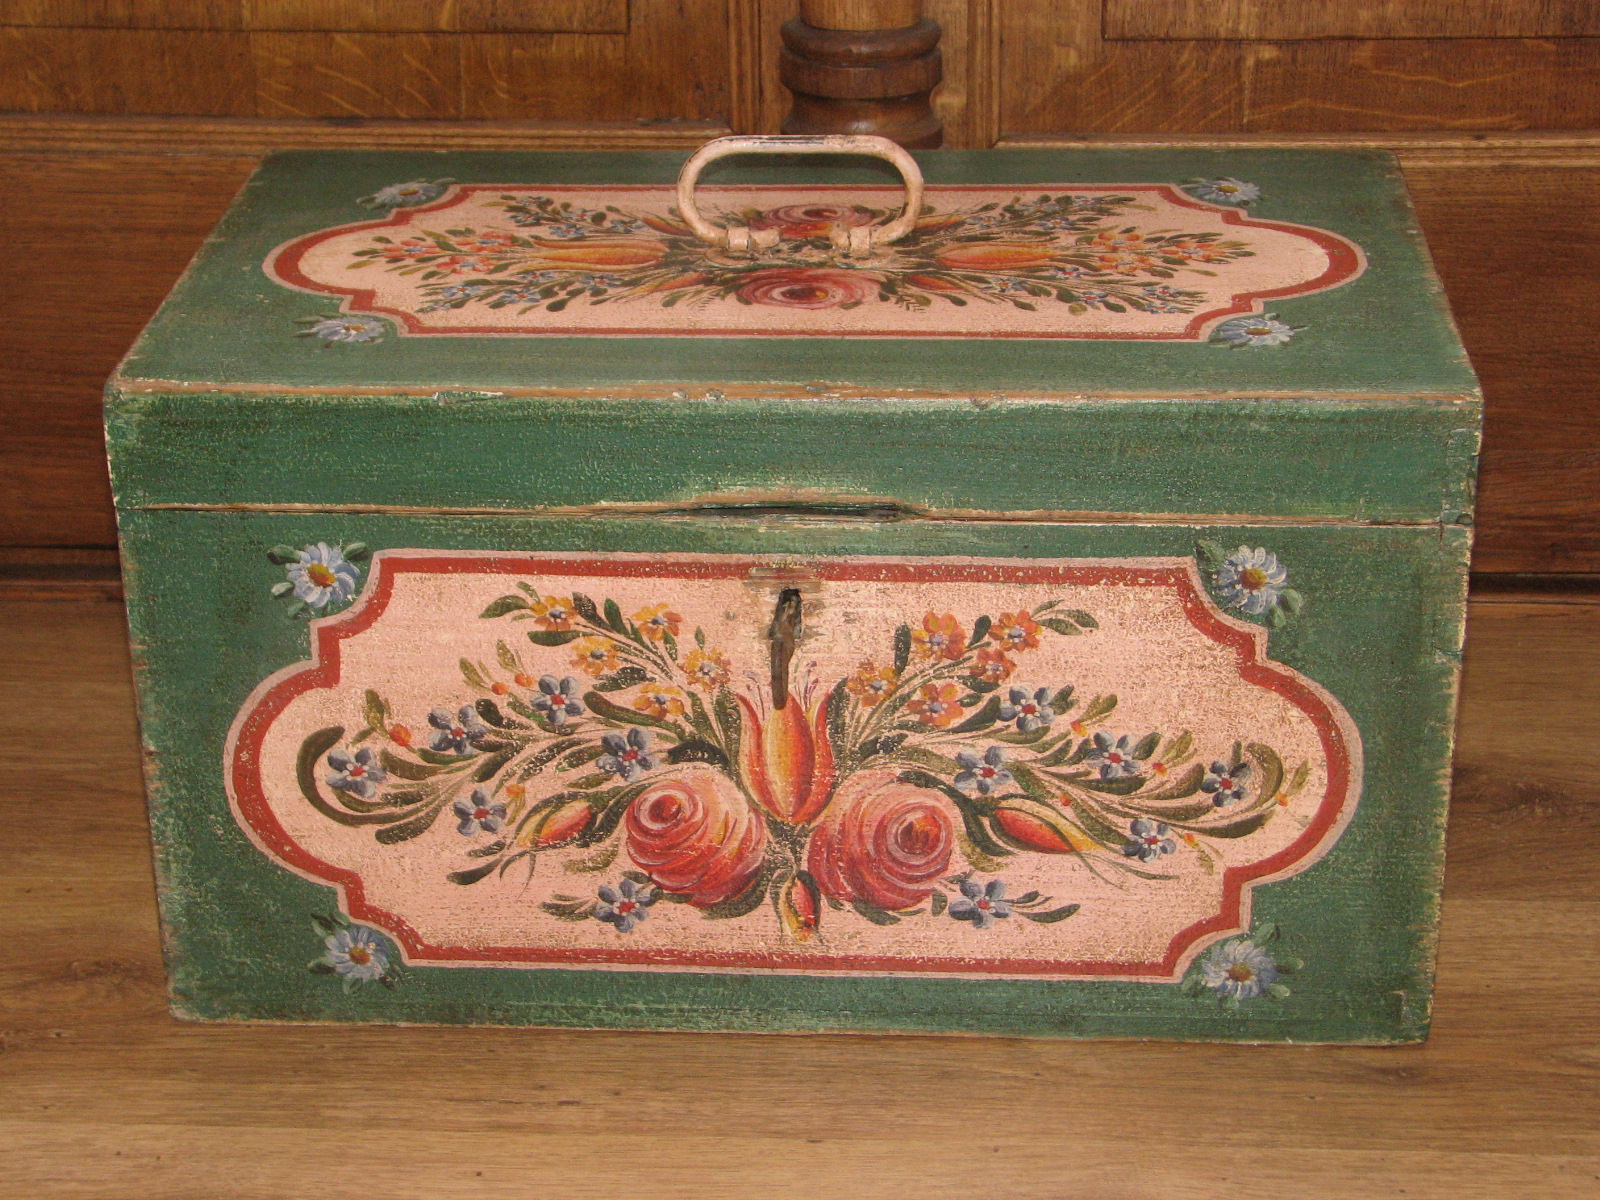 Malovaná truhla malé velikosti s lidovým motivem květin na růžovém podkladě 3